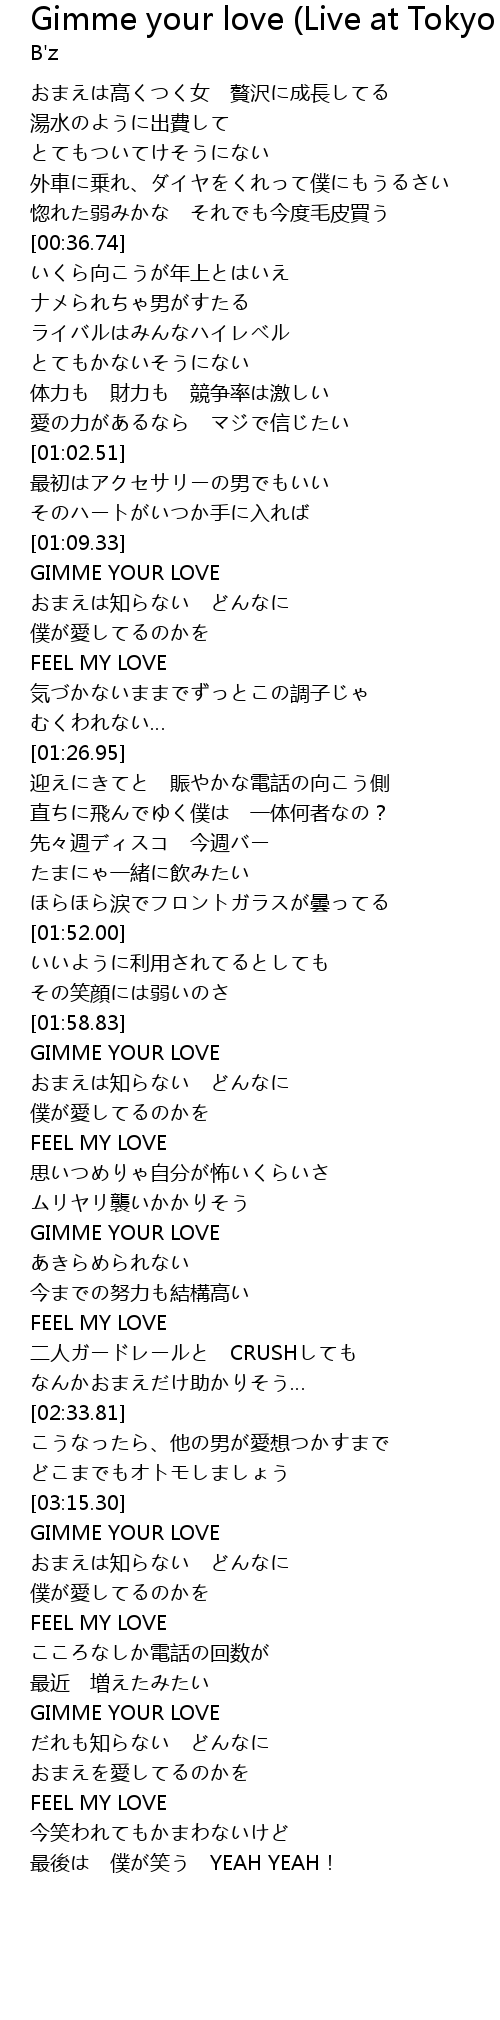 Gimme Your Love Live At Tokyo Dome Lyrics Follow Lyrics